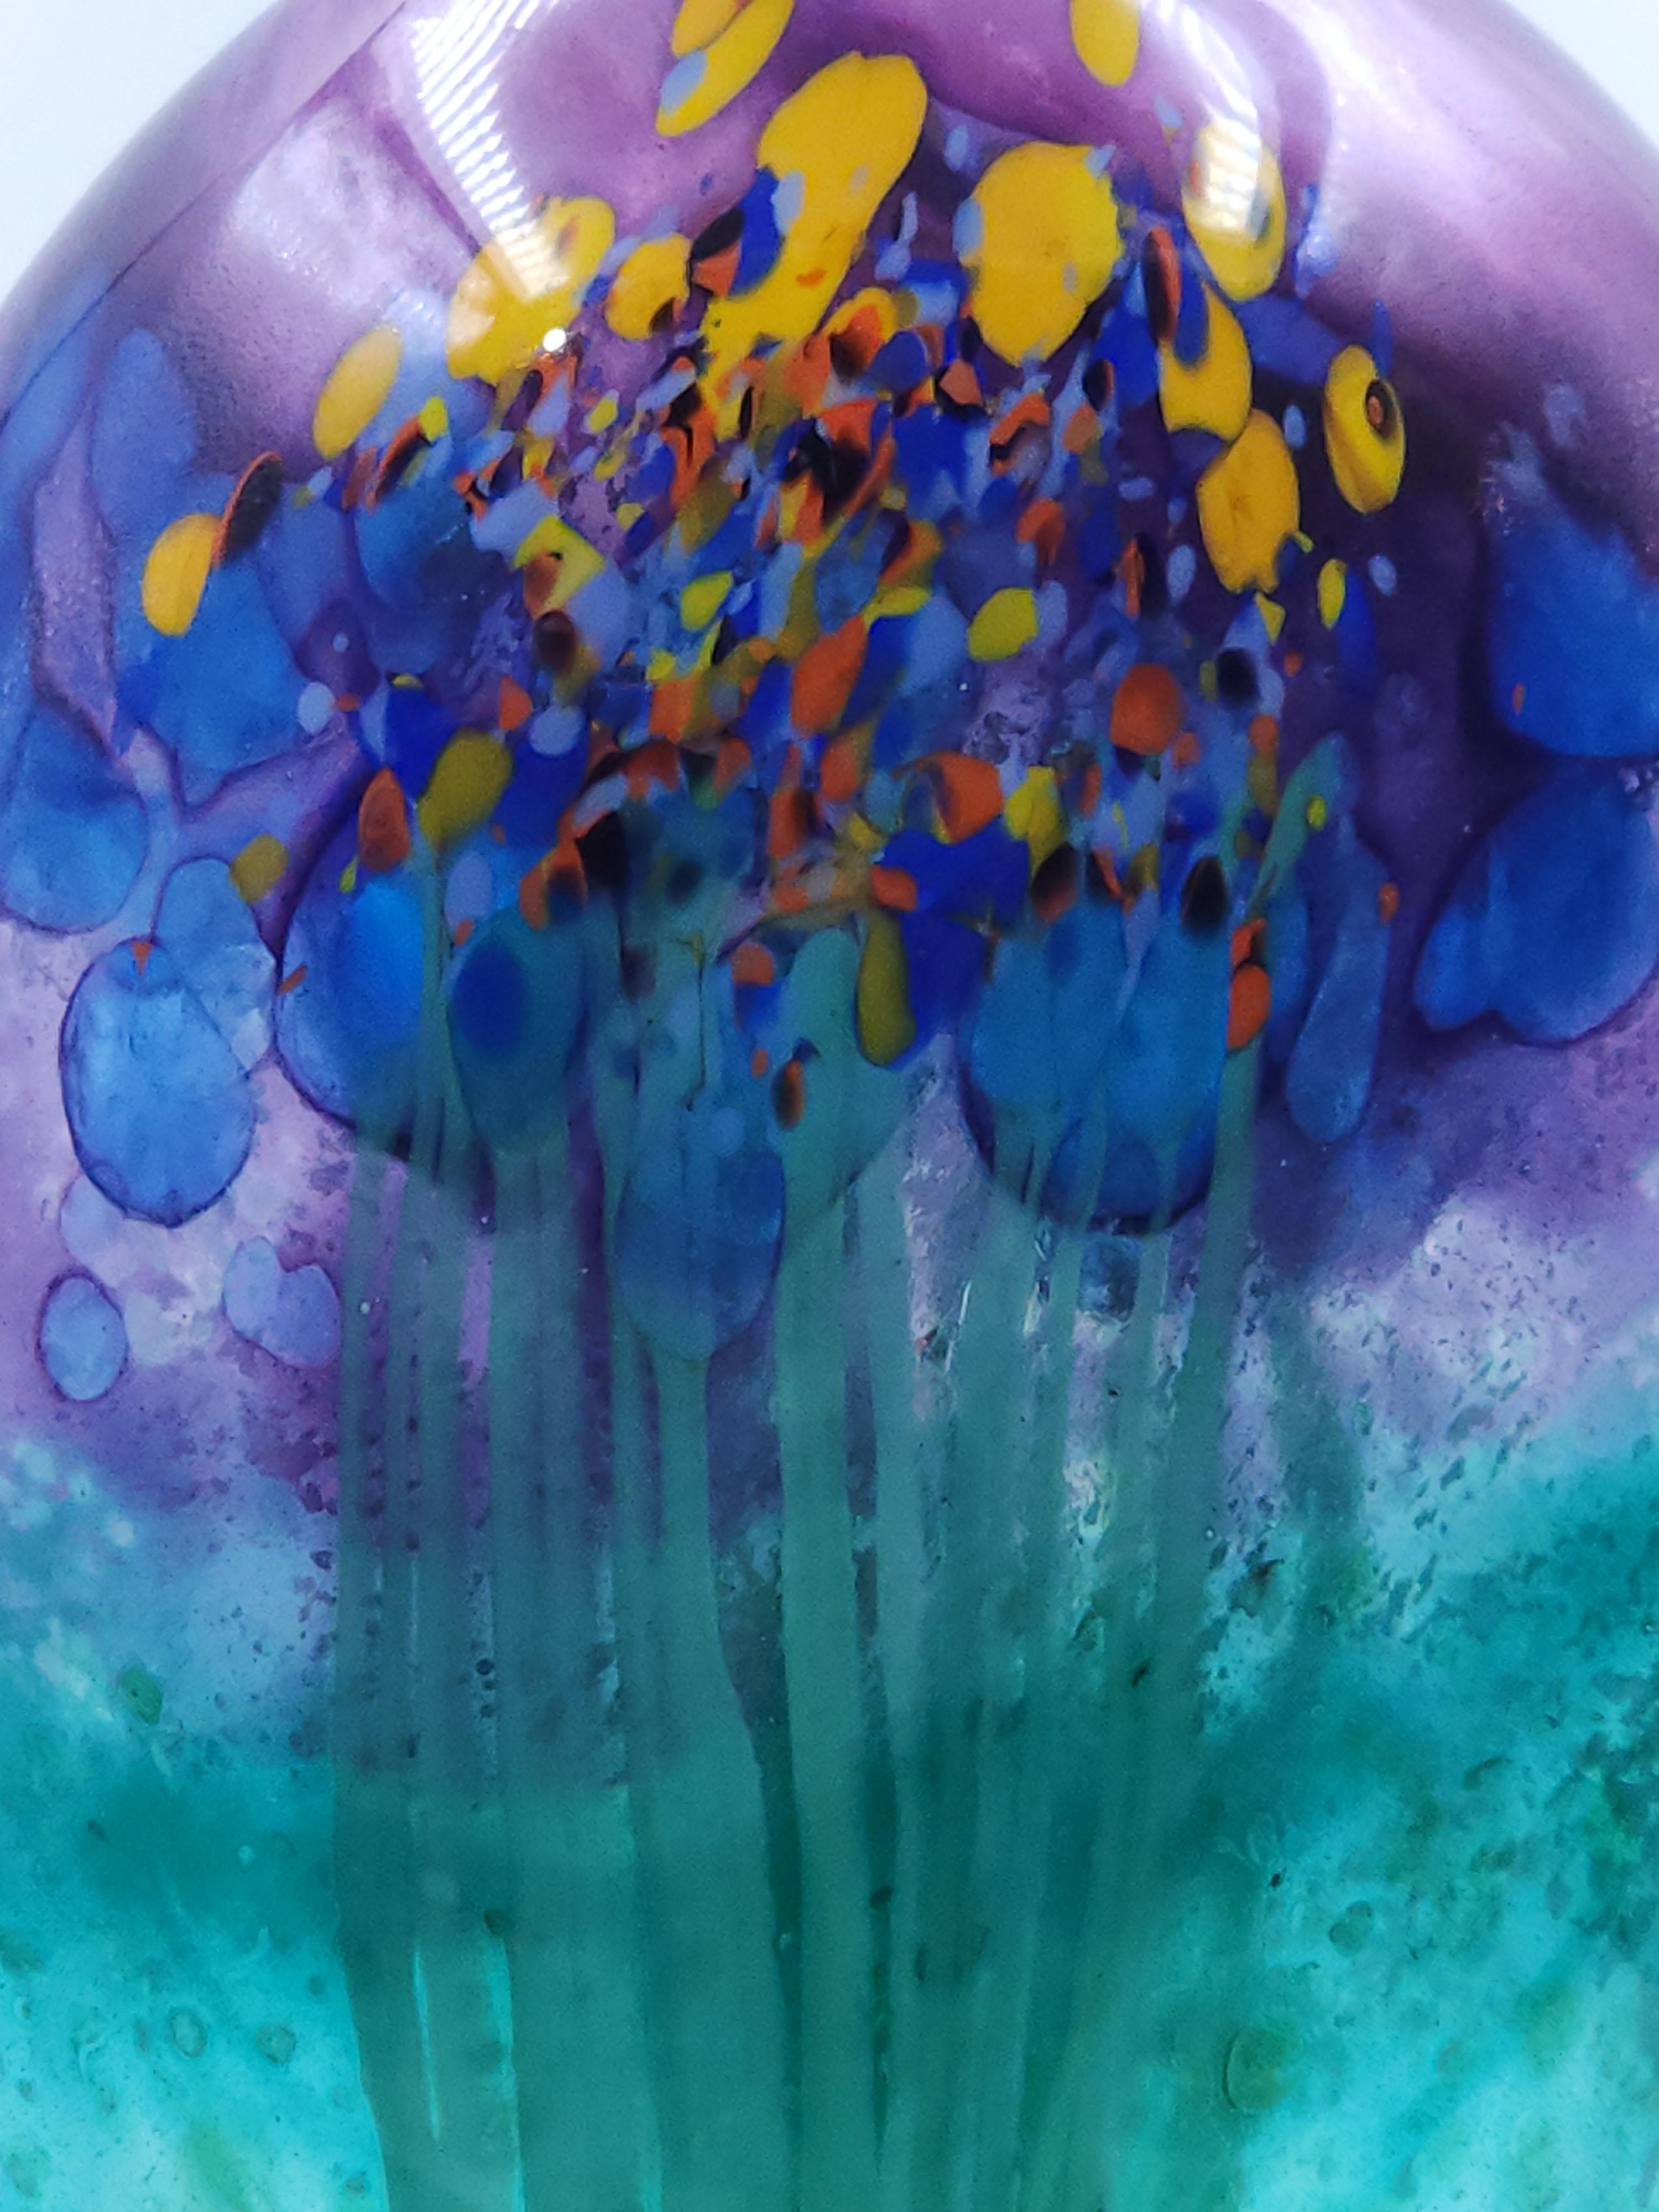 Signierte finnische Glasvase, 20. Jahrhundert, signiert
Schöne finnische Glasvase mit einer Mischung aus kalten Farben in Blau, Grün und Violett, die ihr in der Mitte mit dem Gelb- und Orangeton einen markanten Touch verleiht.
Maßnahmen:
Höhe: 21.5